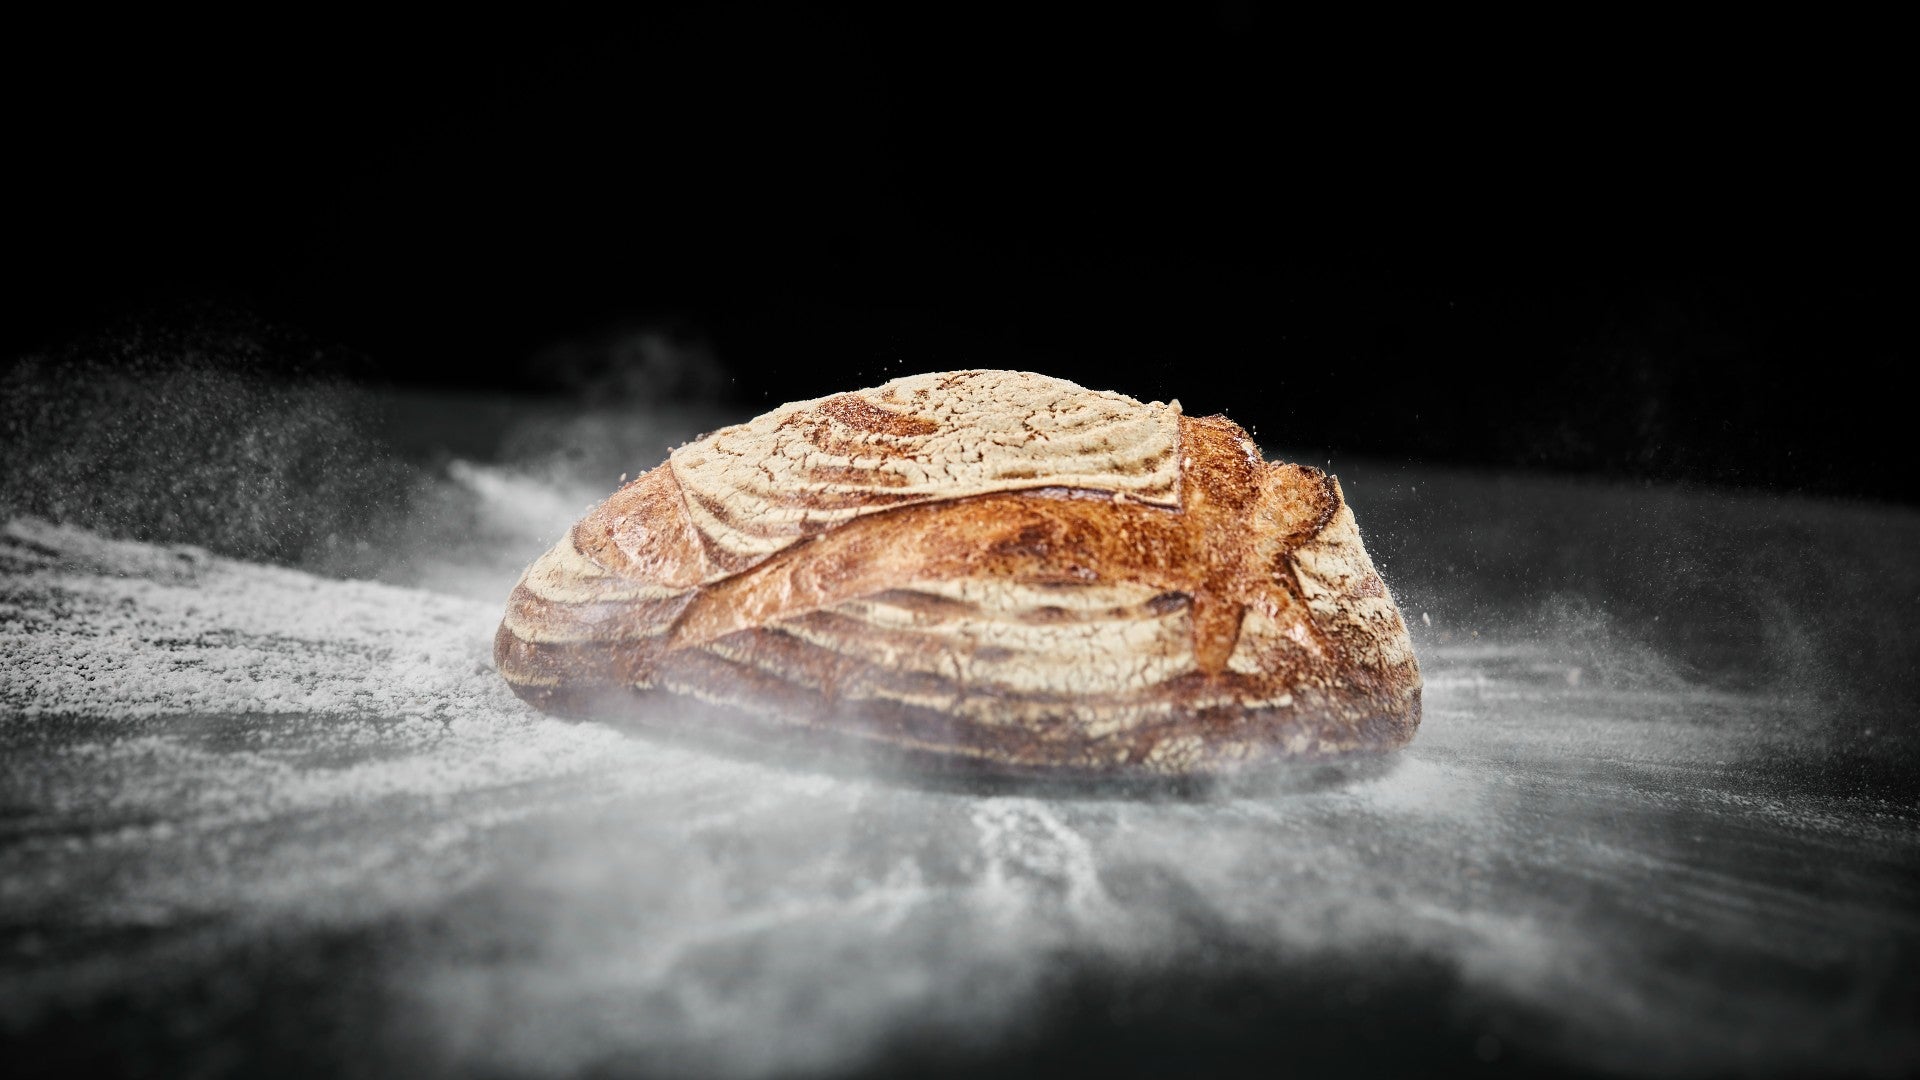 Brot online kaufen und direkt vom Bäcker nach Hause liefern lassen. Zu 80% gebcken, so dass es auf dem Lieferweg nicht austrocknet. Das geht bei Backverliebt.com